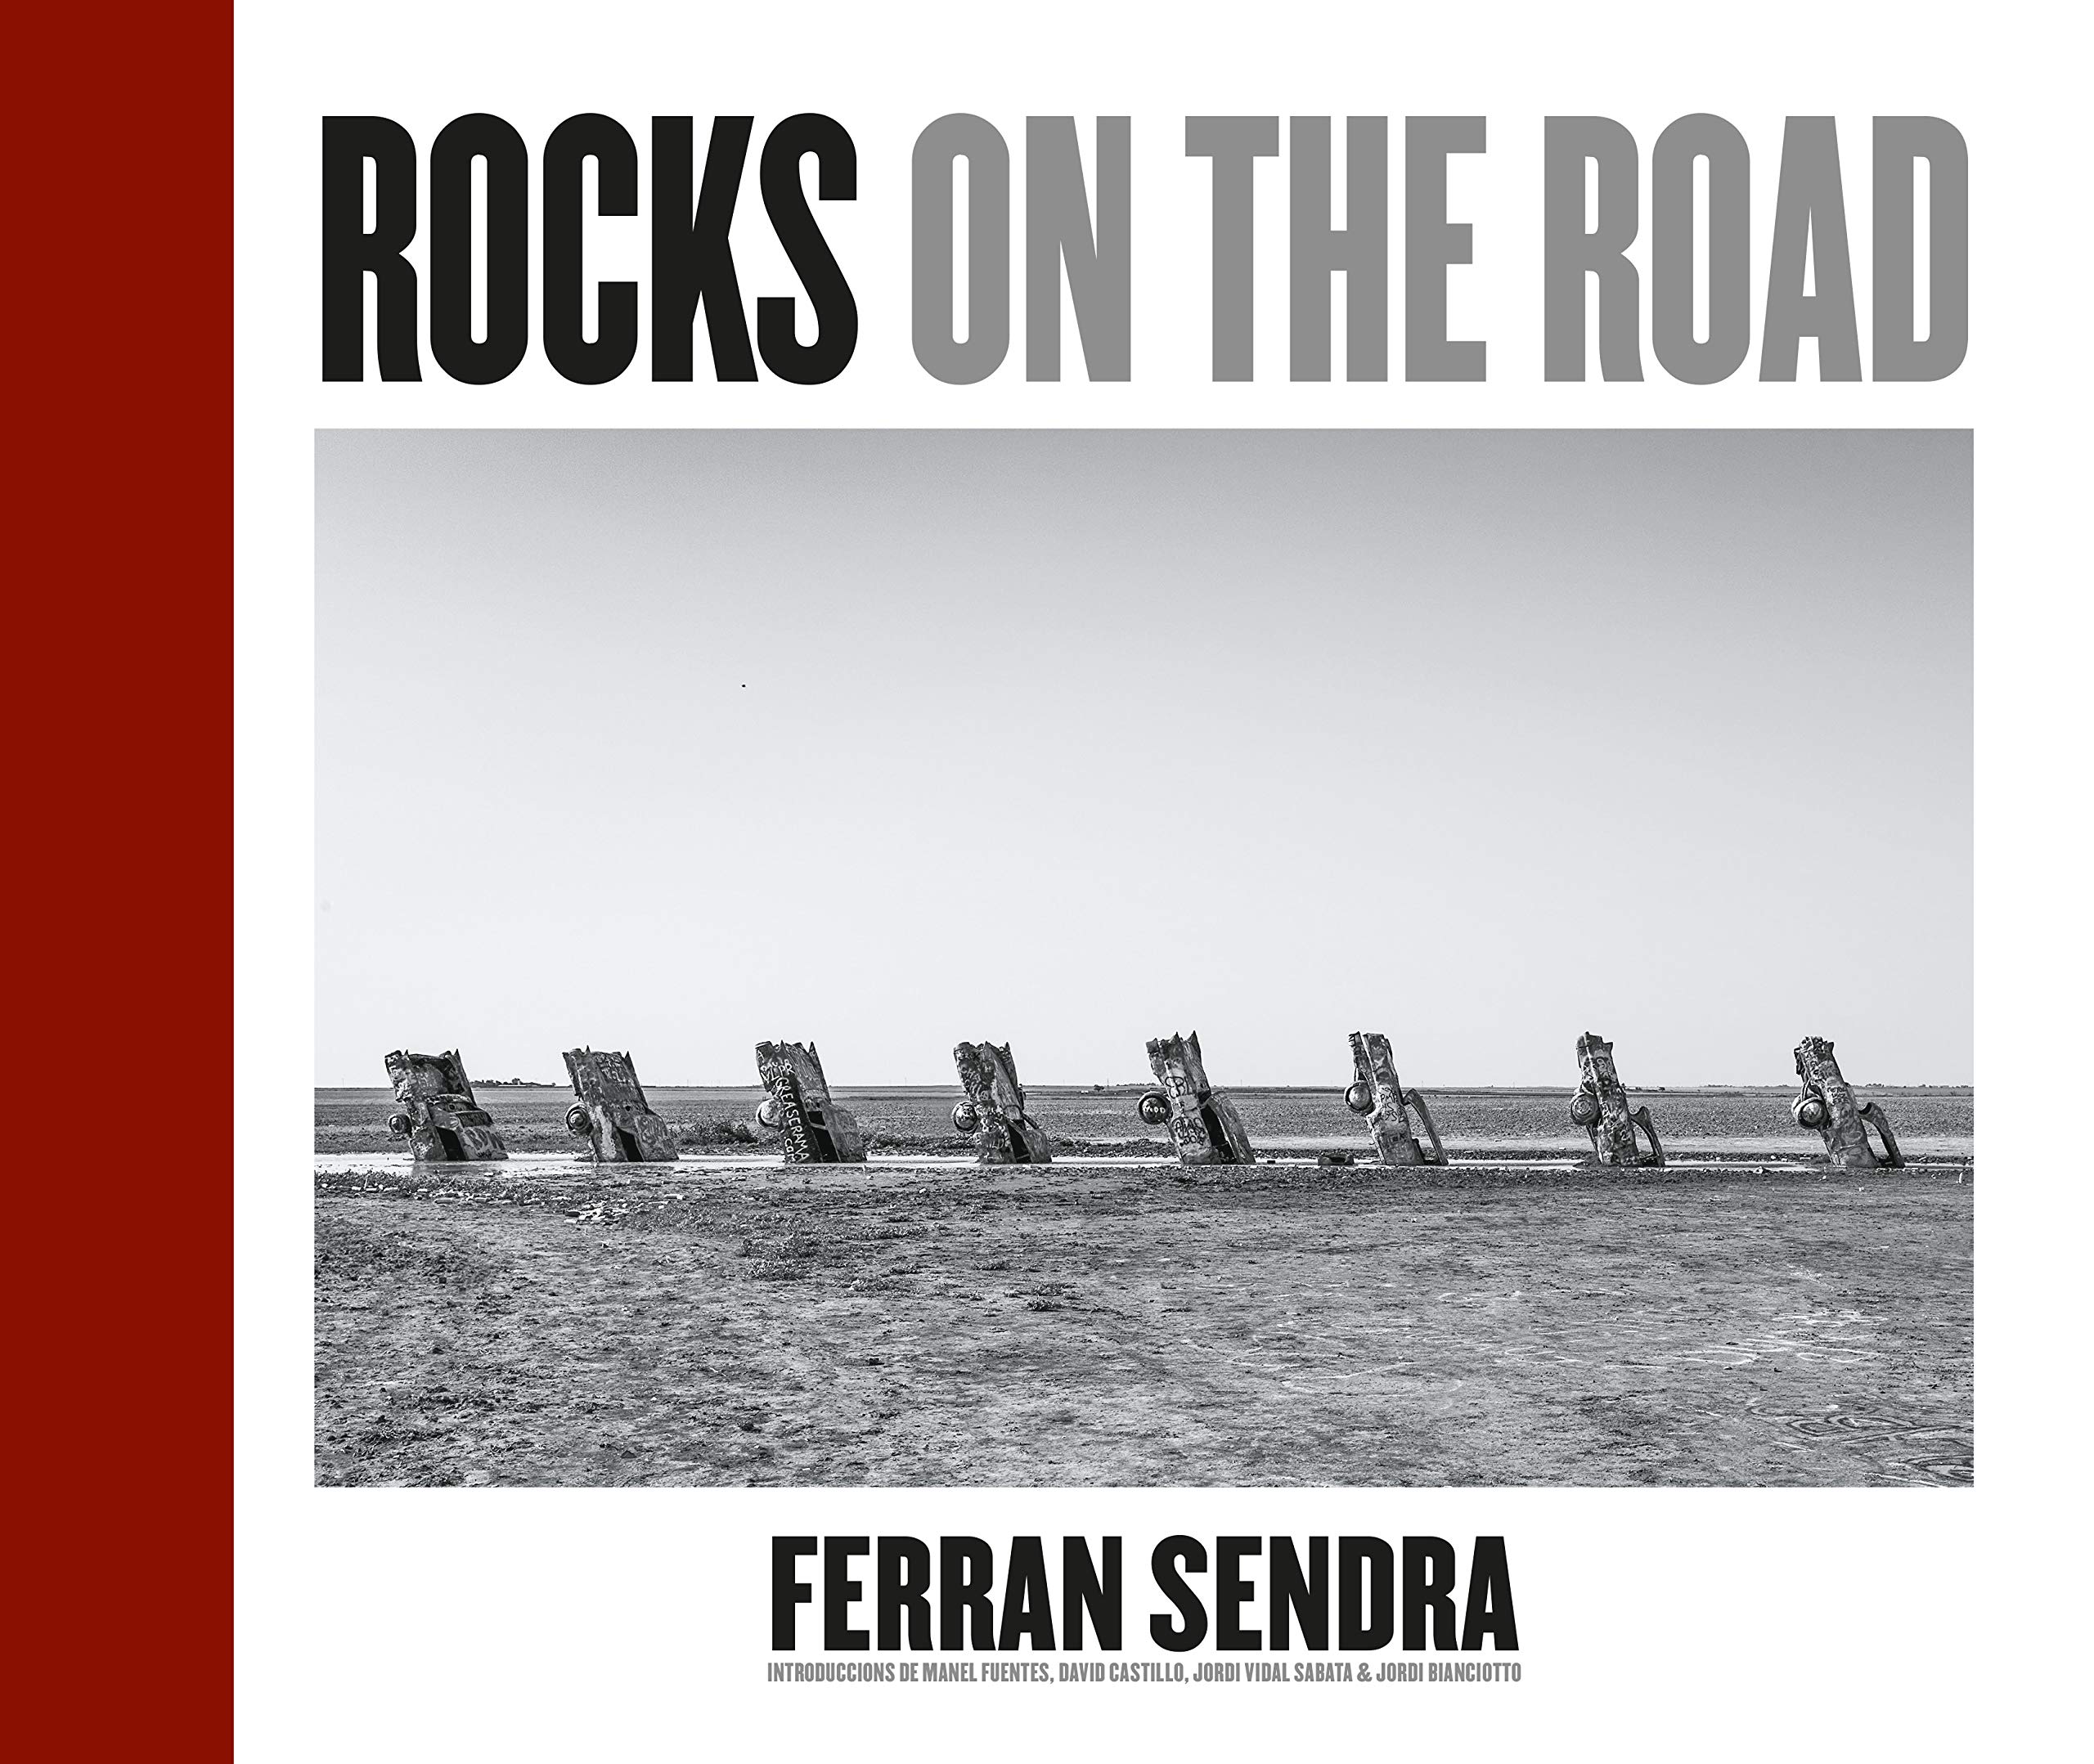 "Rocks on the road" de Ferran Sendra